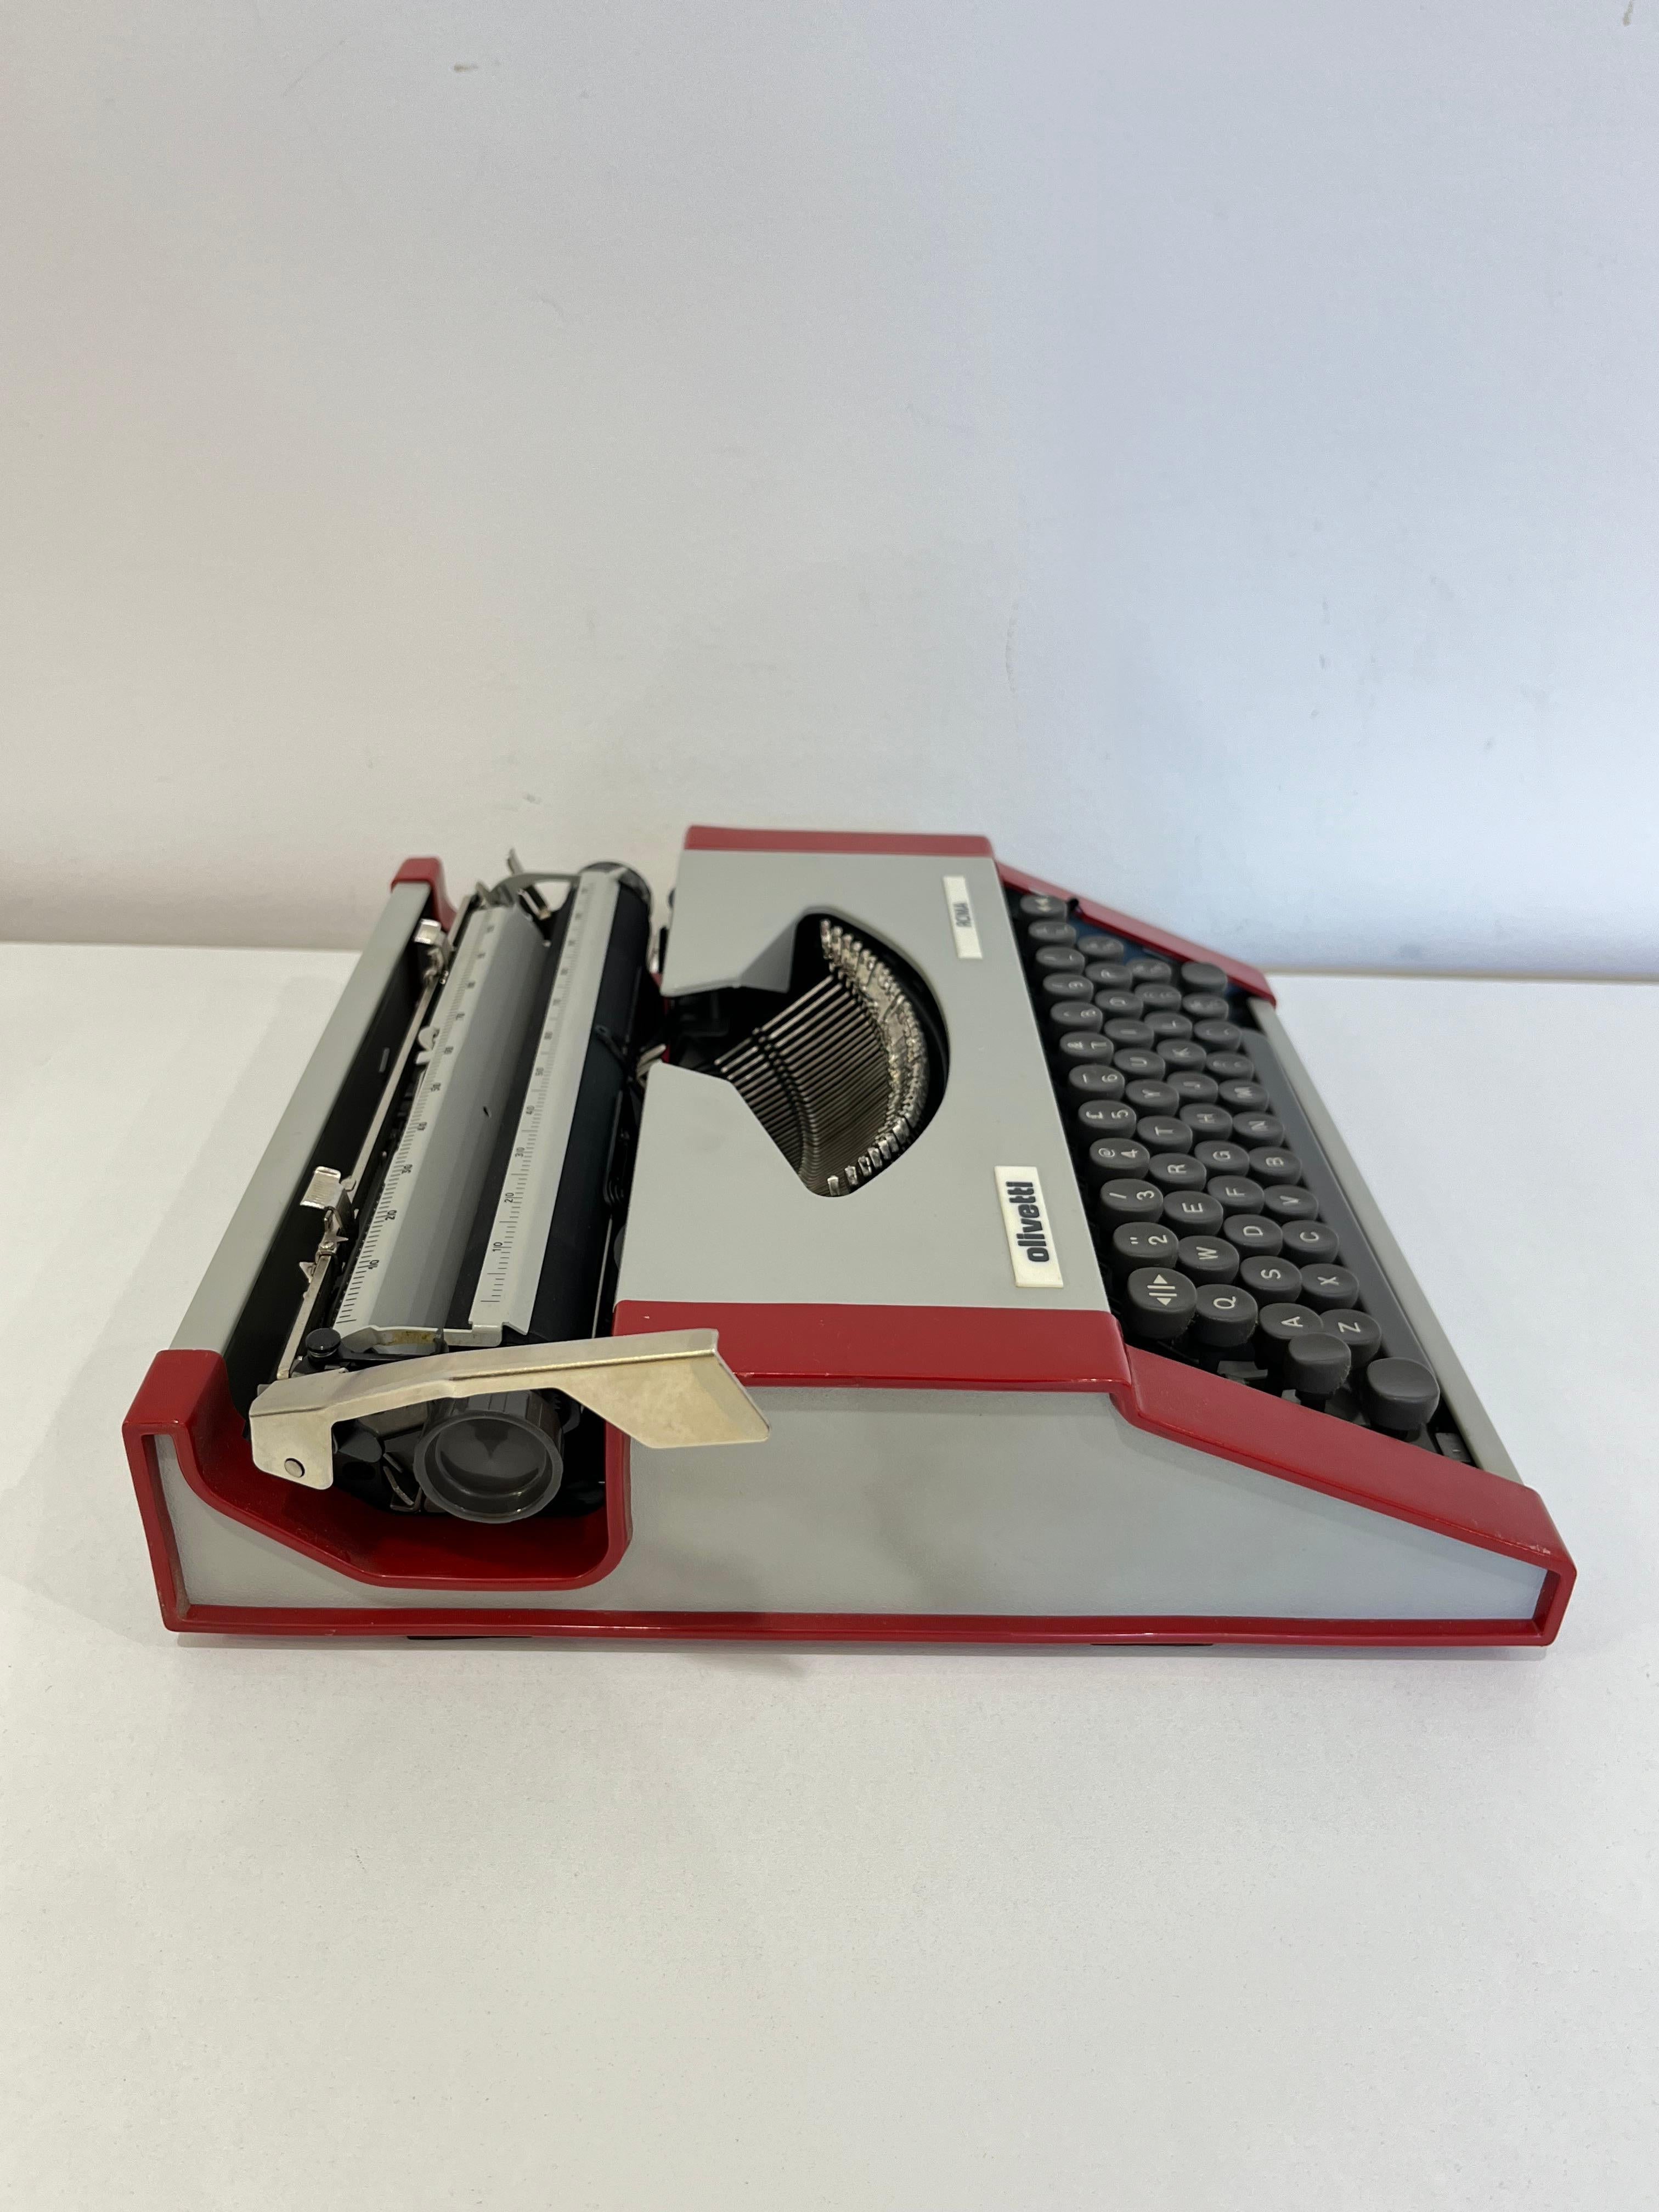 olivetti typewriter models